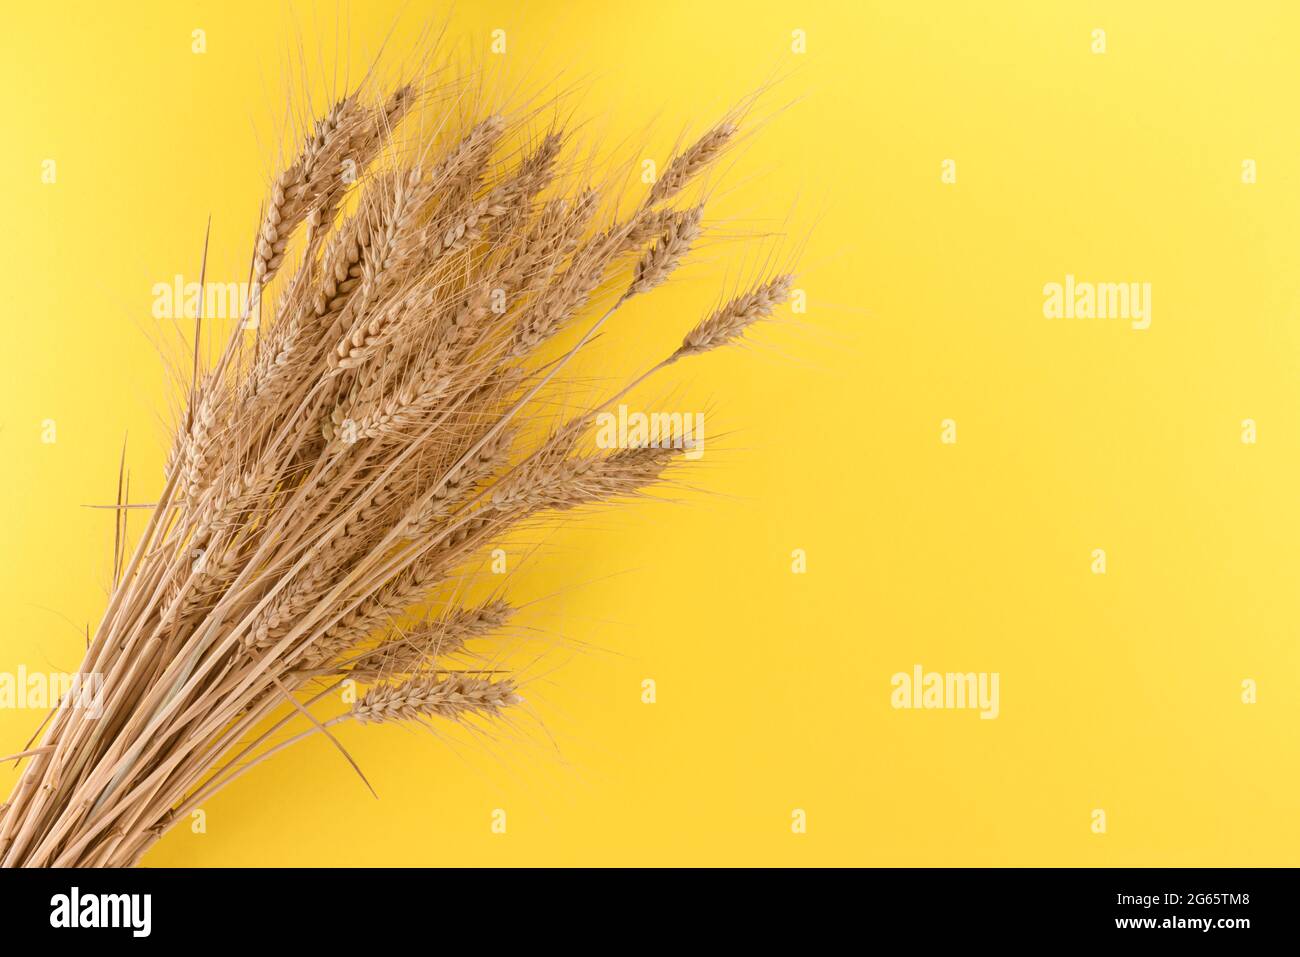 Épis de blé isolés sur fond jaune, motif graphique pour illustrations, étiquette, accueil. Copier l'espace Banque D'Images